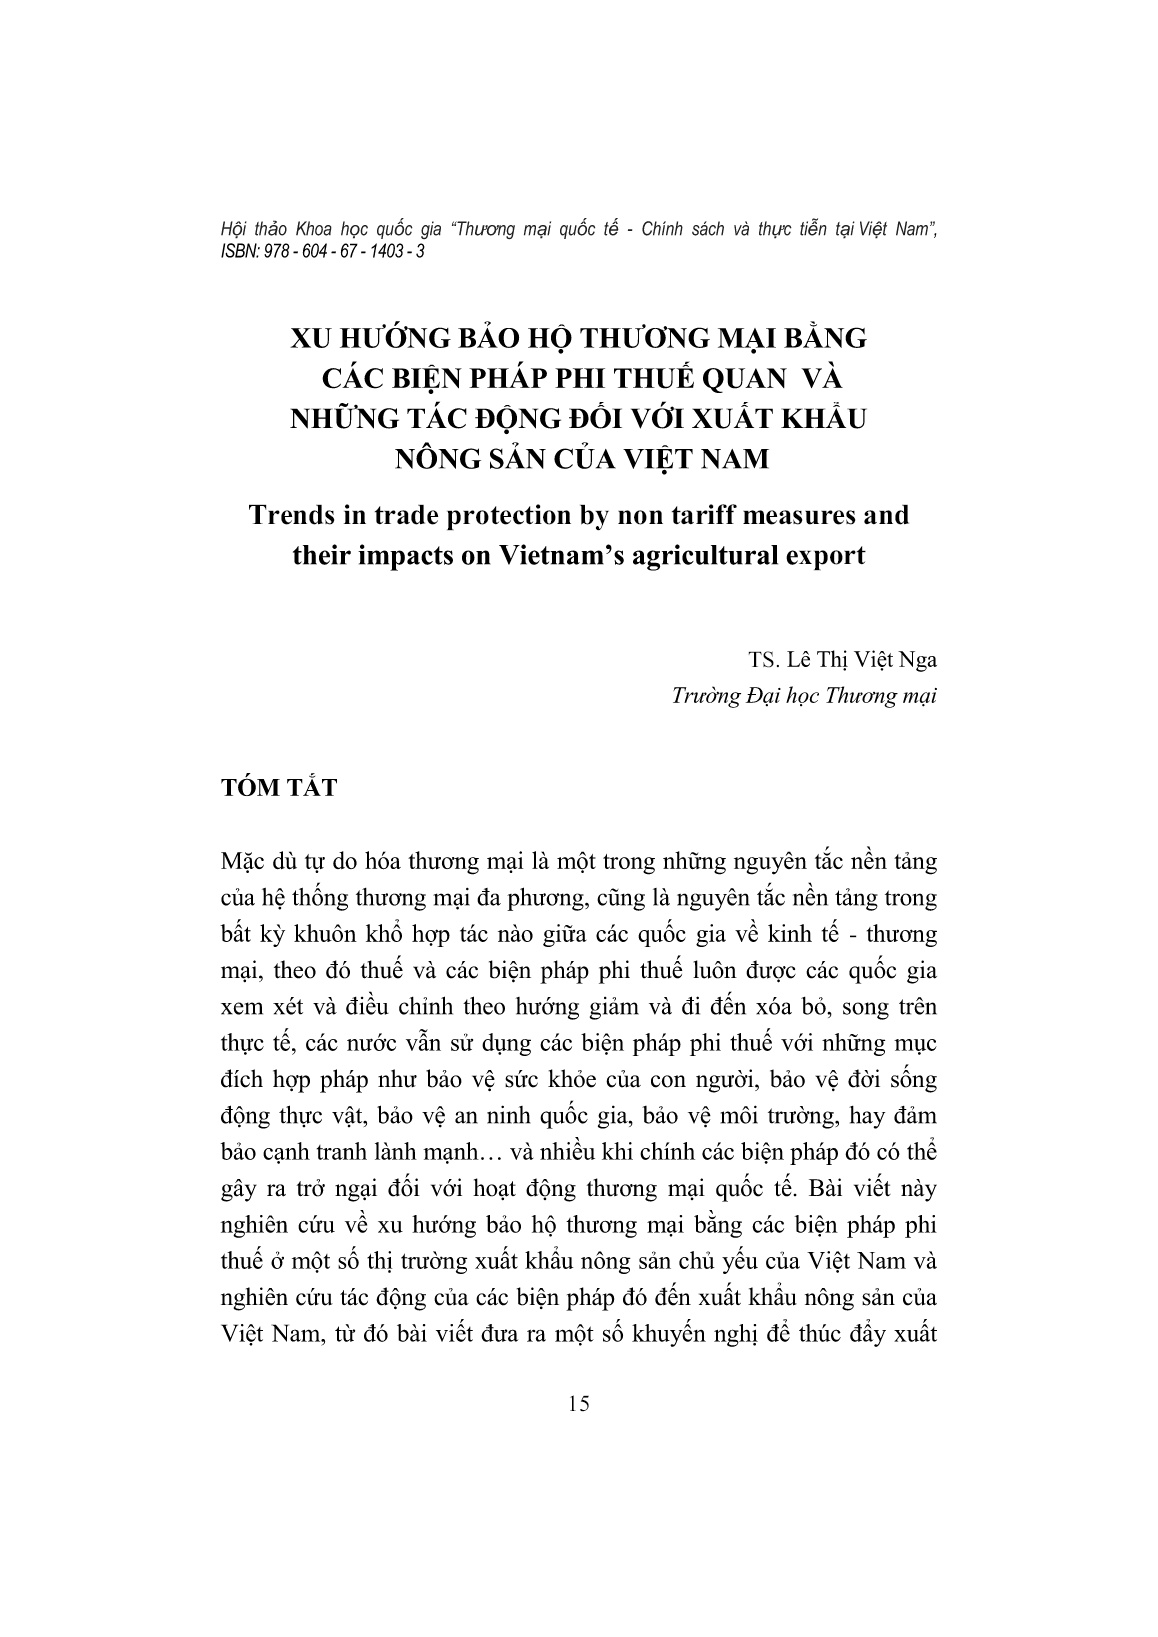 Xu hướng bảo hộ thương mại bằng các biện pháp phi thuế quan và những tác động đối với xuất khẩu nông sản của Việt Nam trang 1